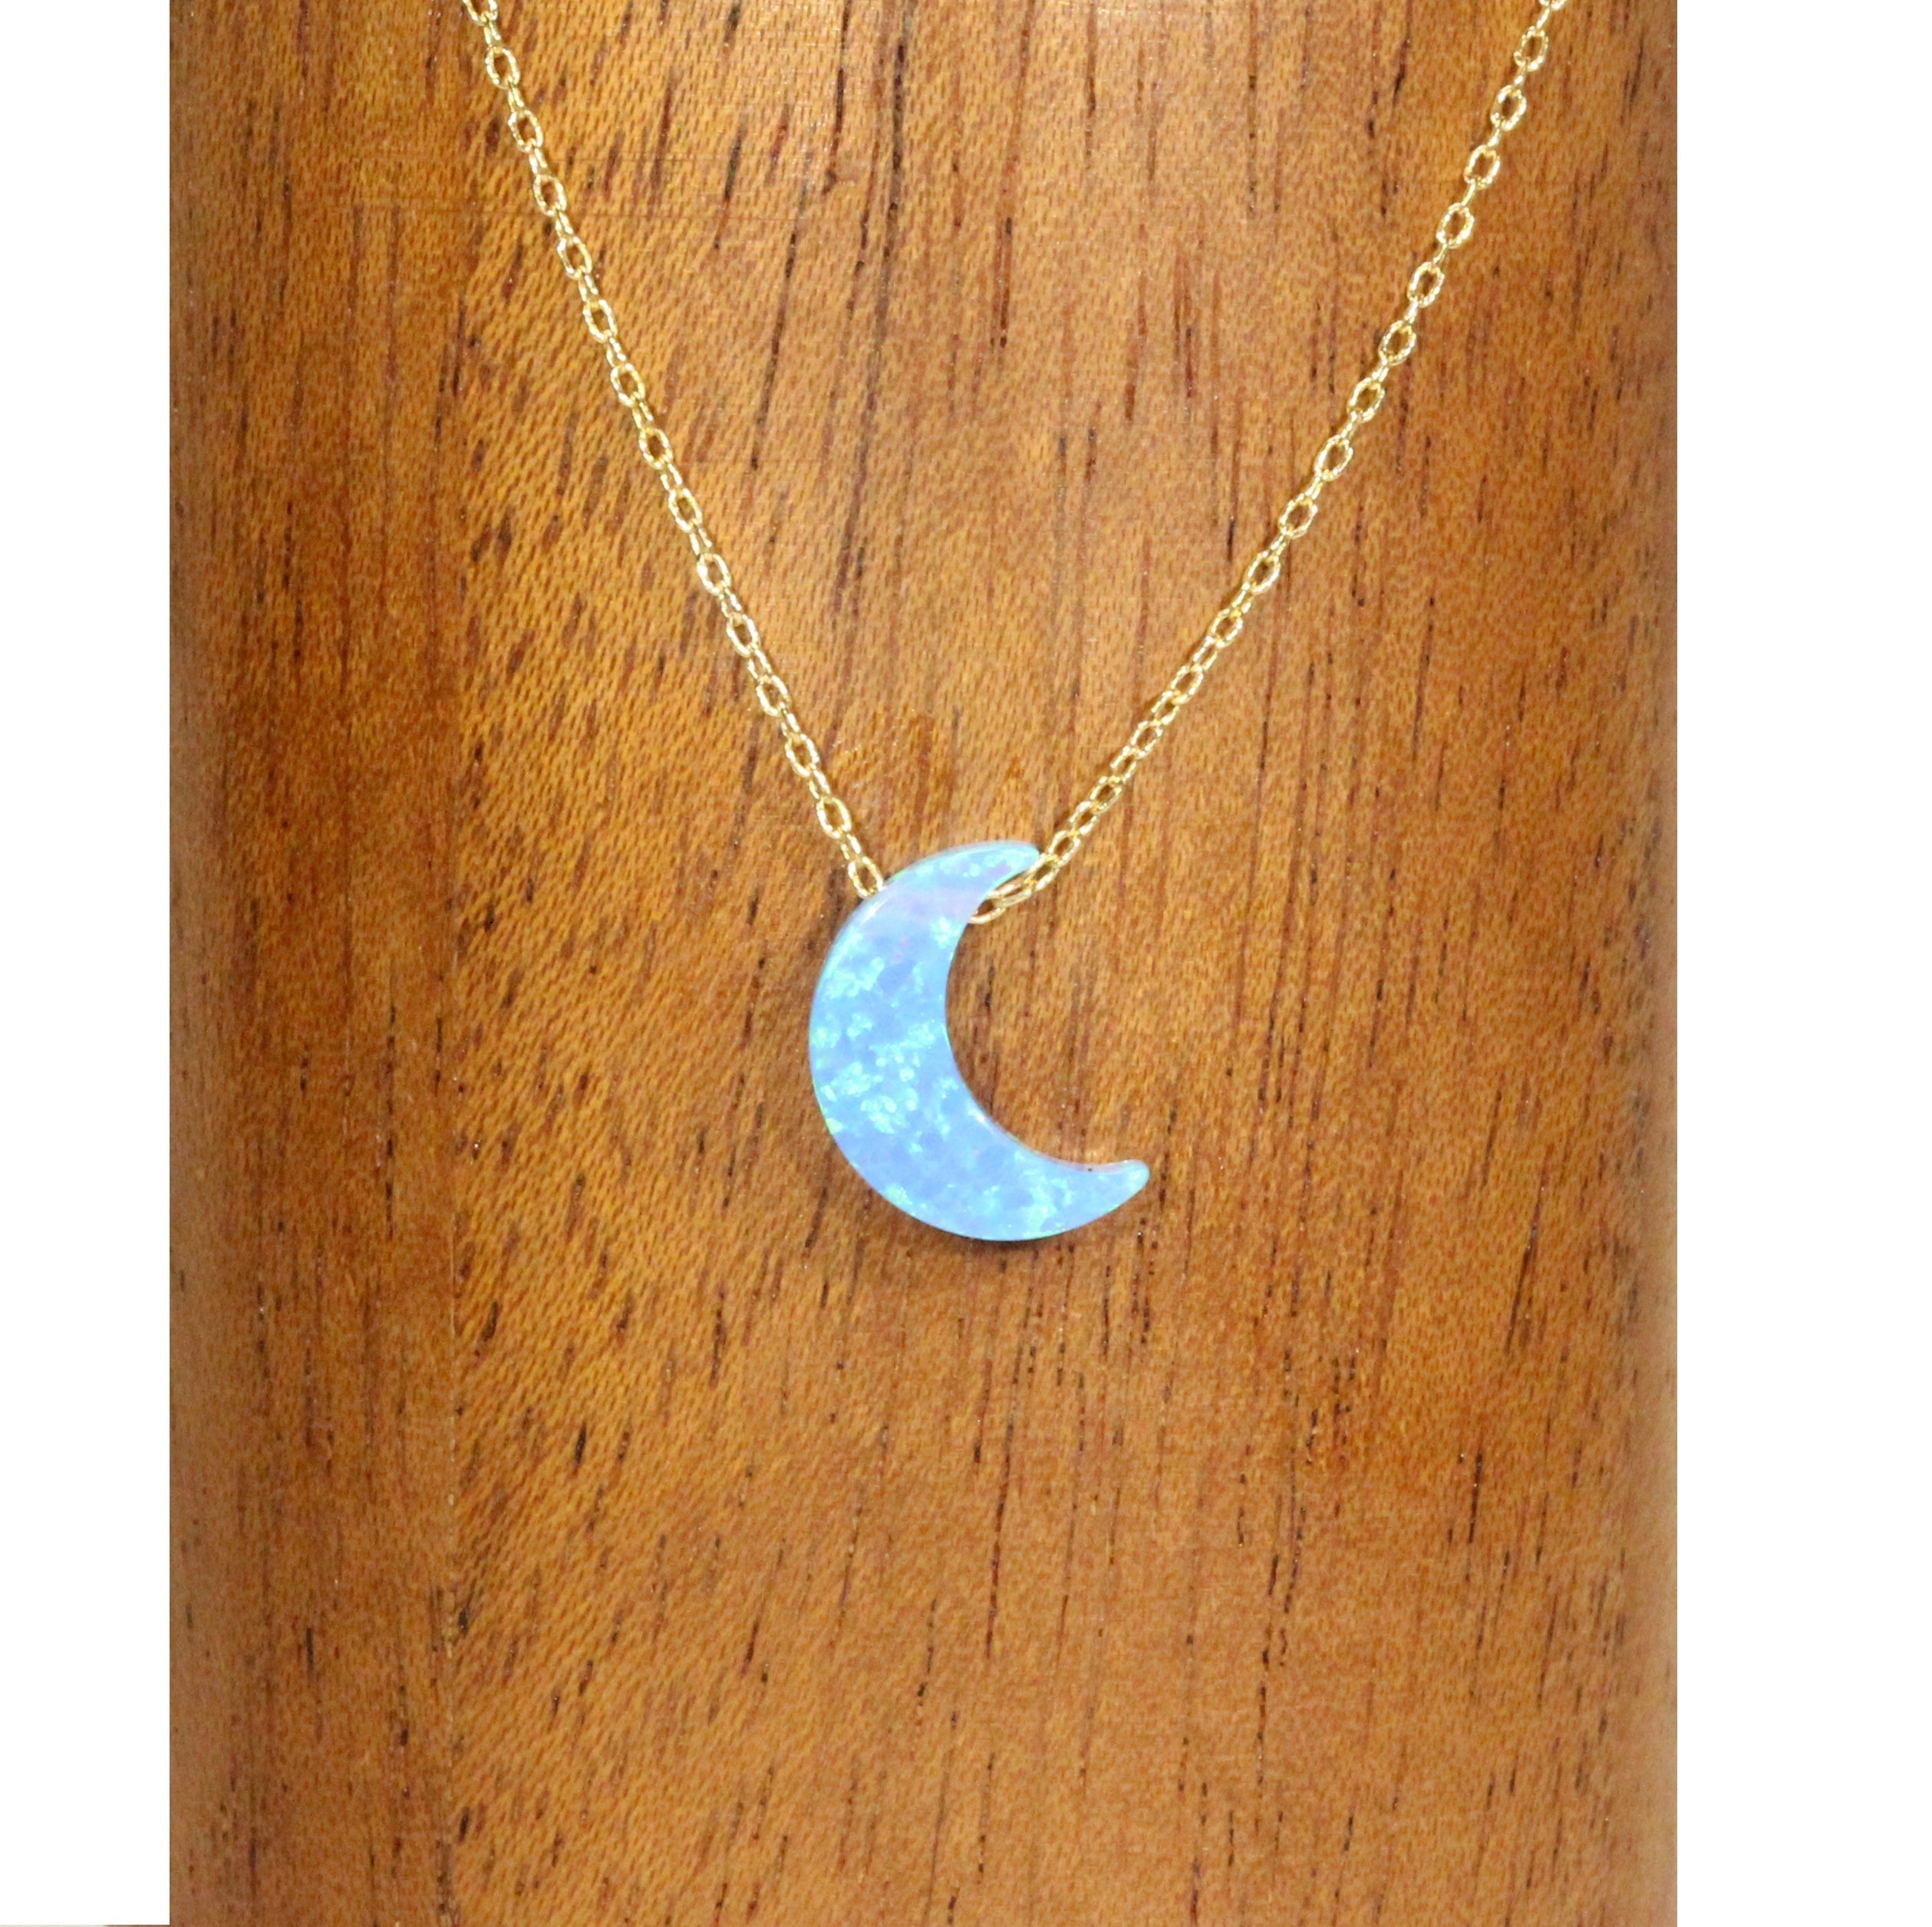 Opal moon necklace | Opal Gold filled jewelry | OpaLandJewelry